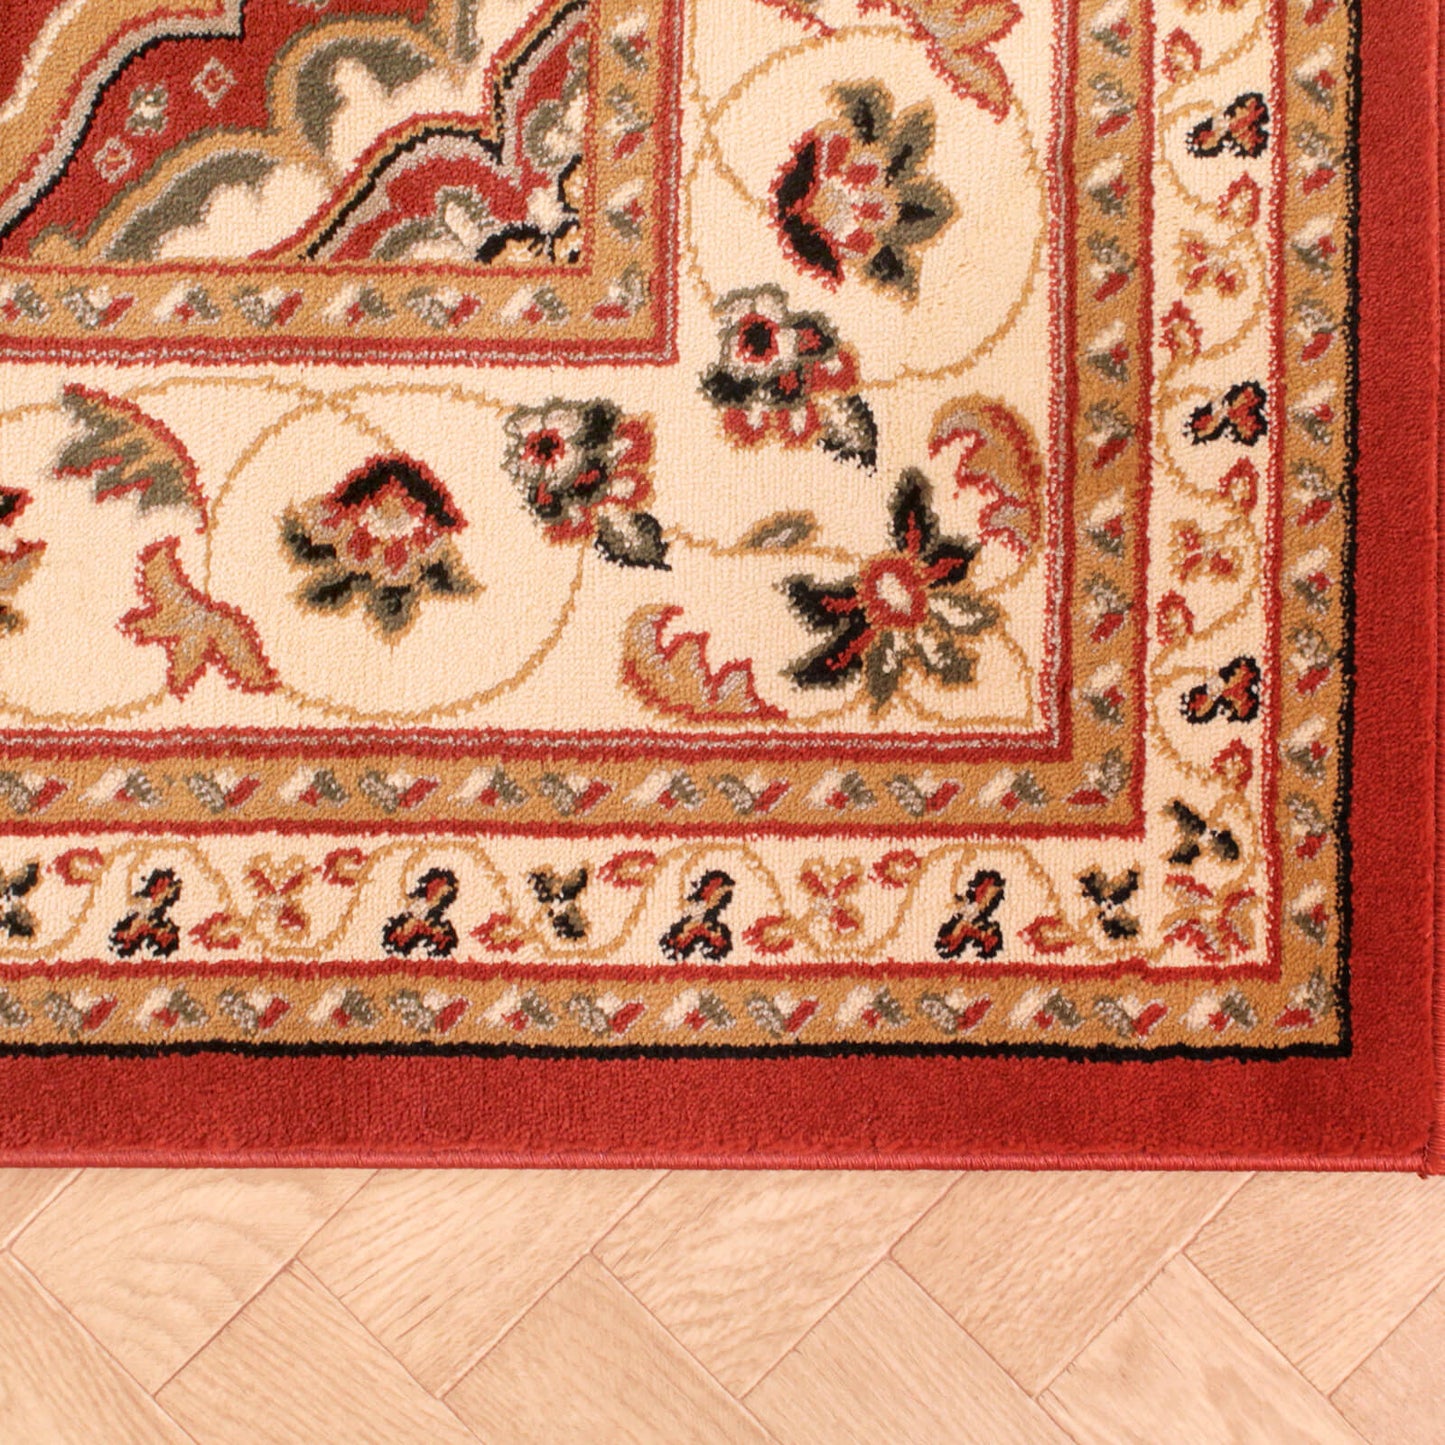 Handmade Carpets Sherborne Terracotta Rug